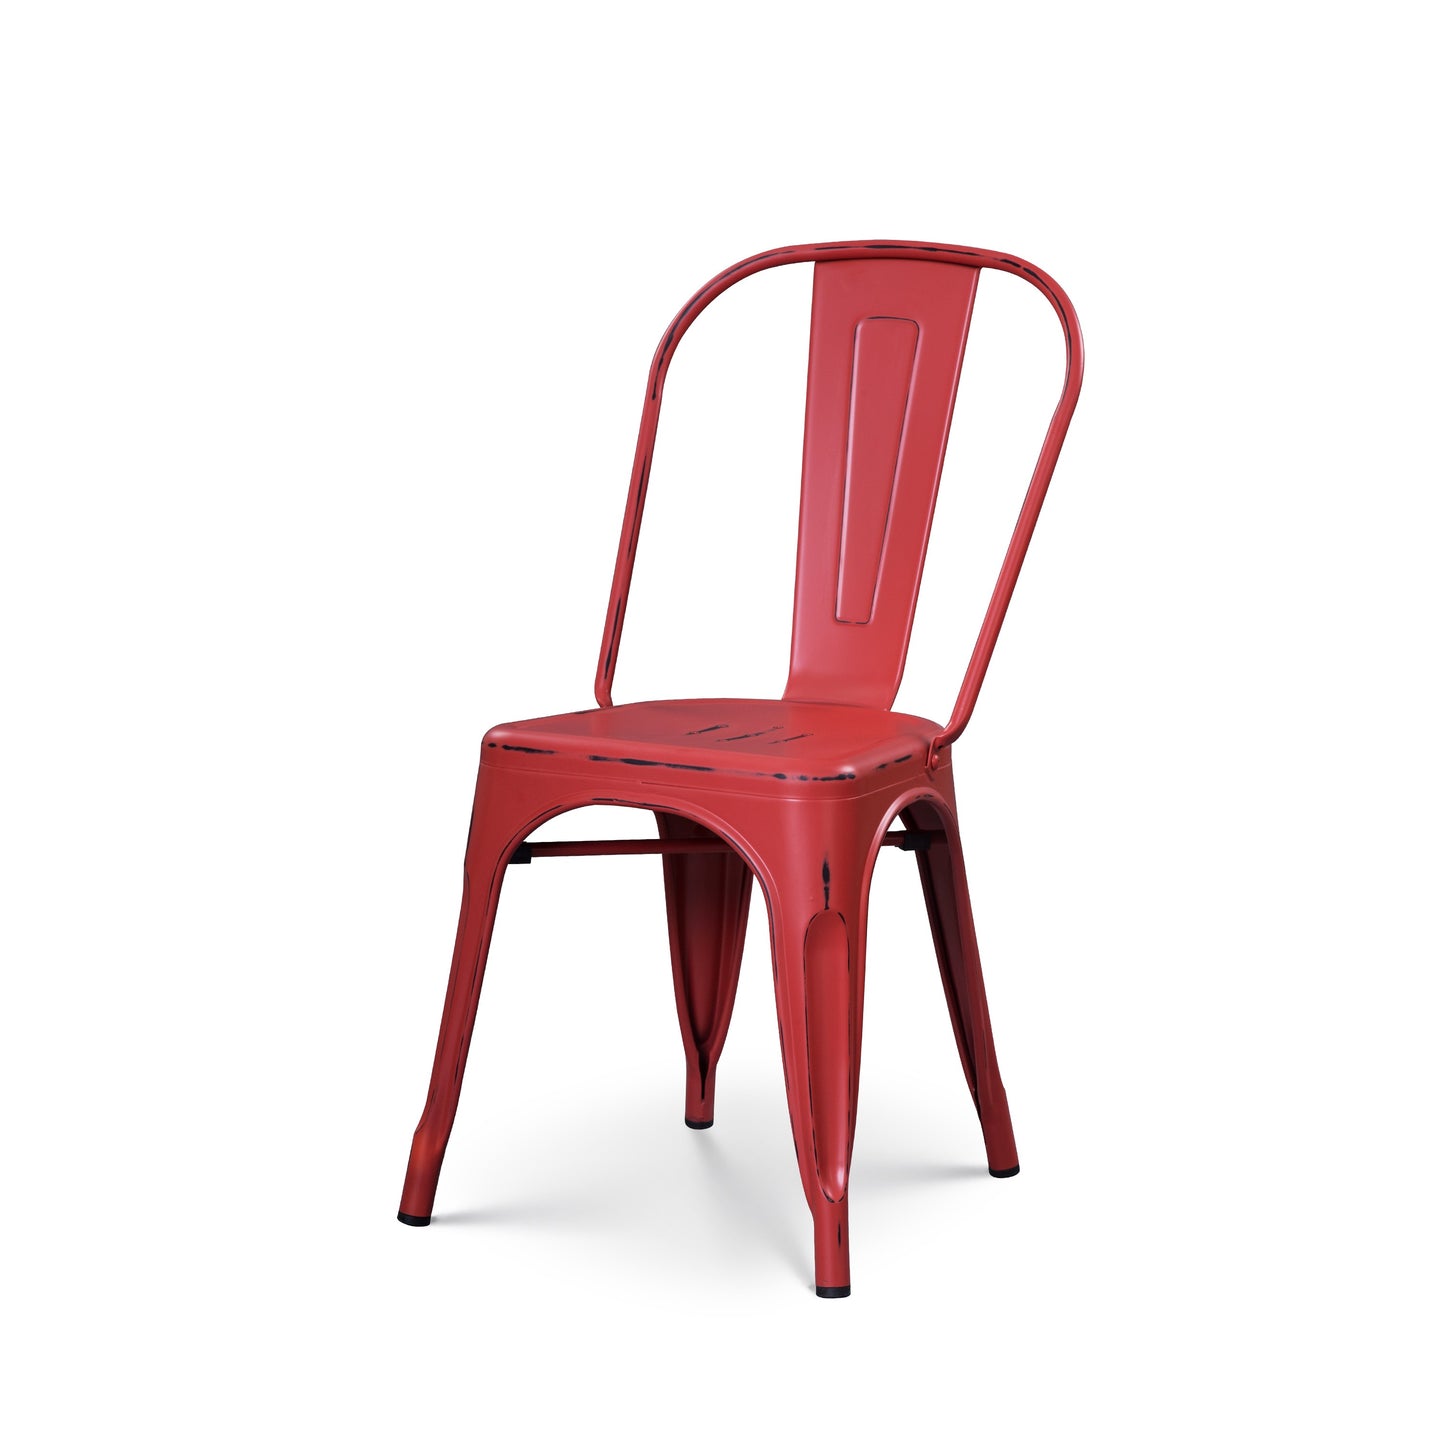 Chaise en métal rouge style industriel - Effet vieillit